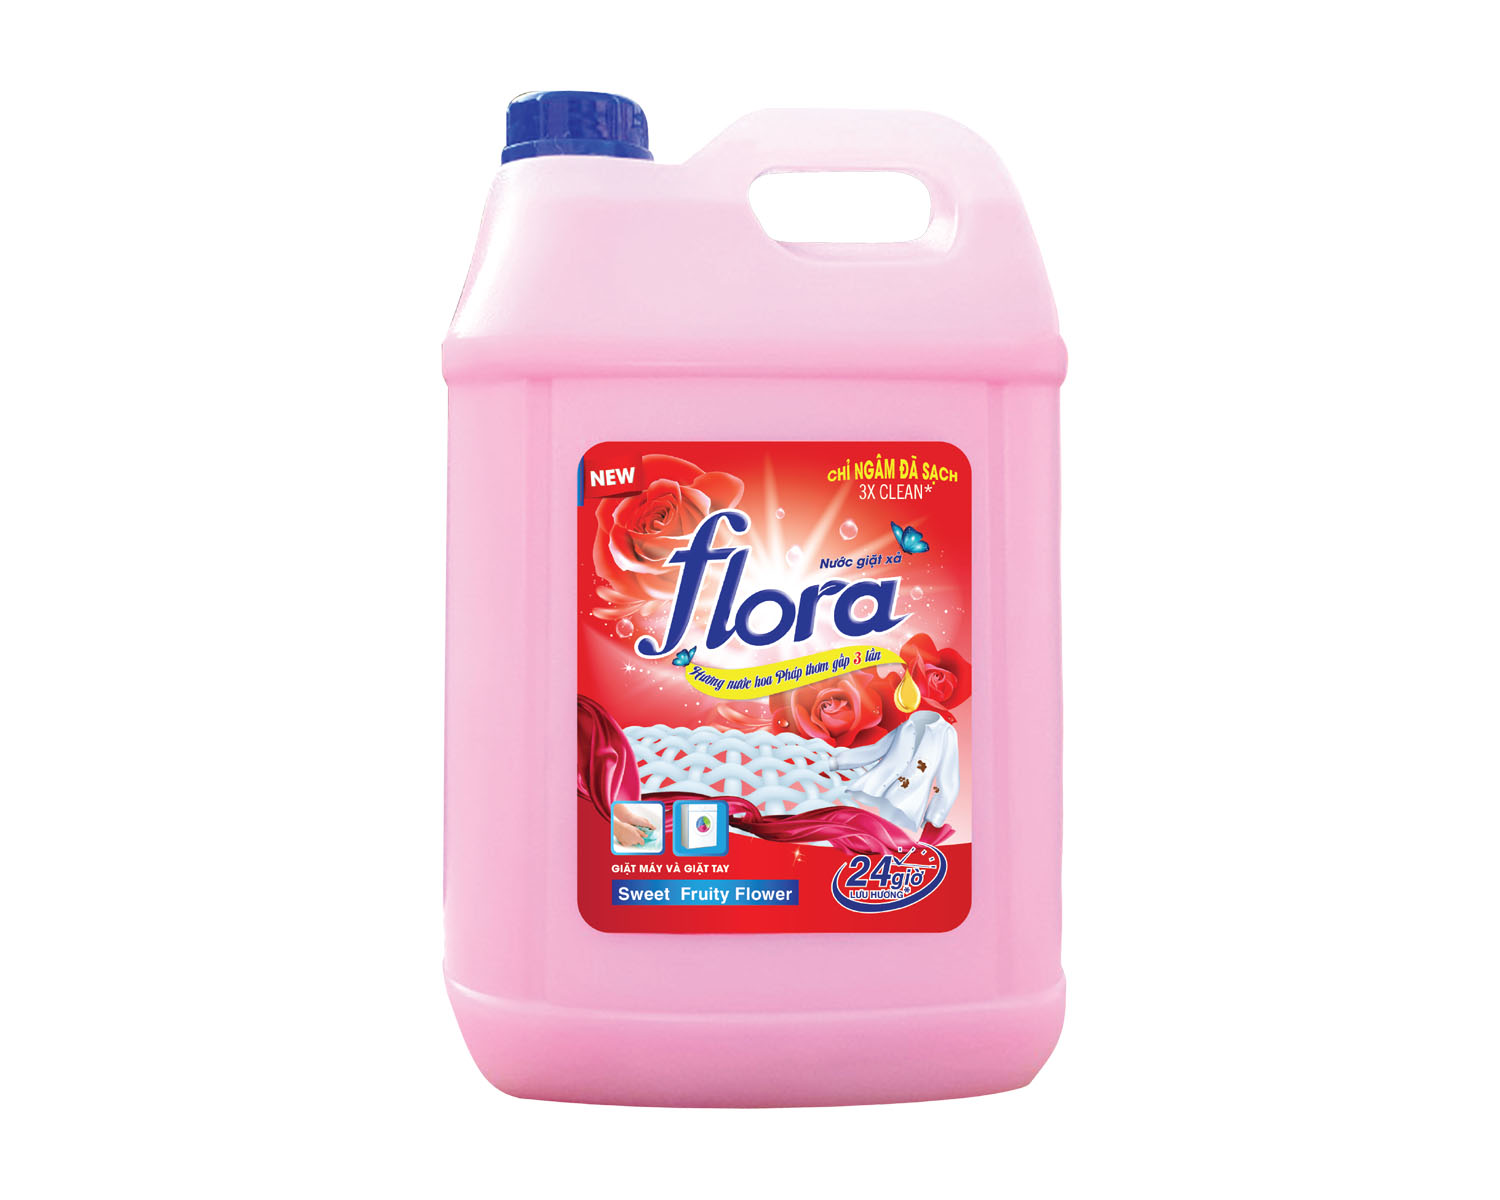 Nước giặt xả Flora can 9,36kg siêu tiết kiệm